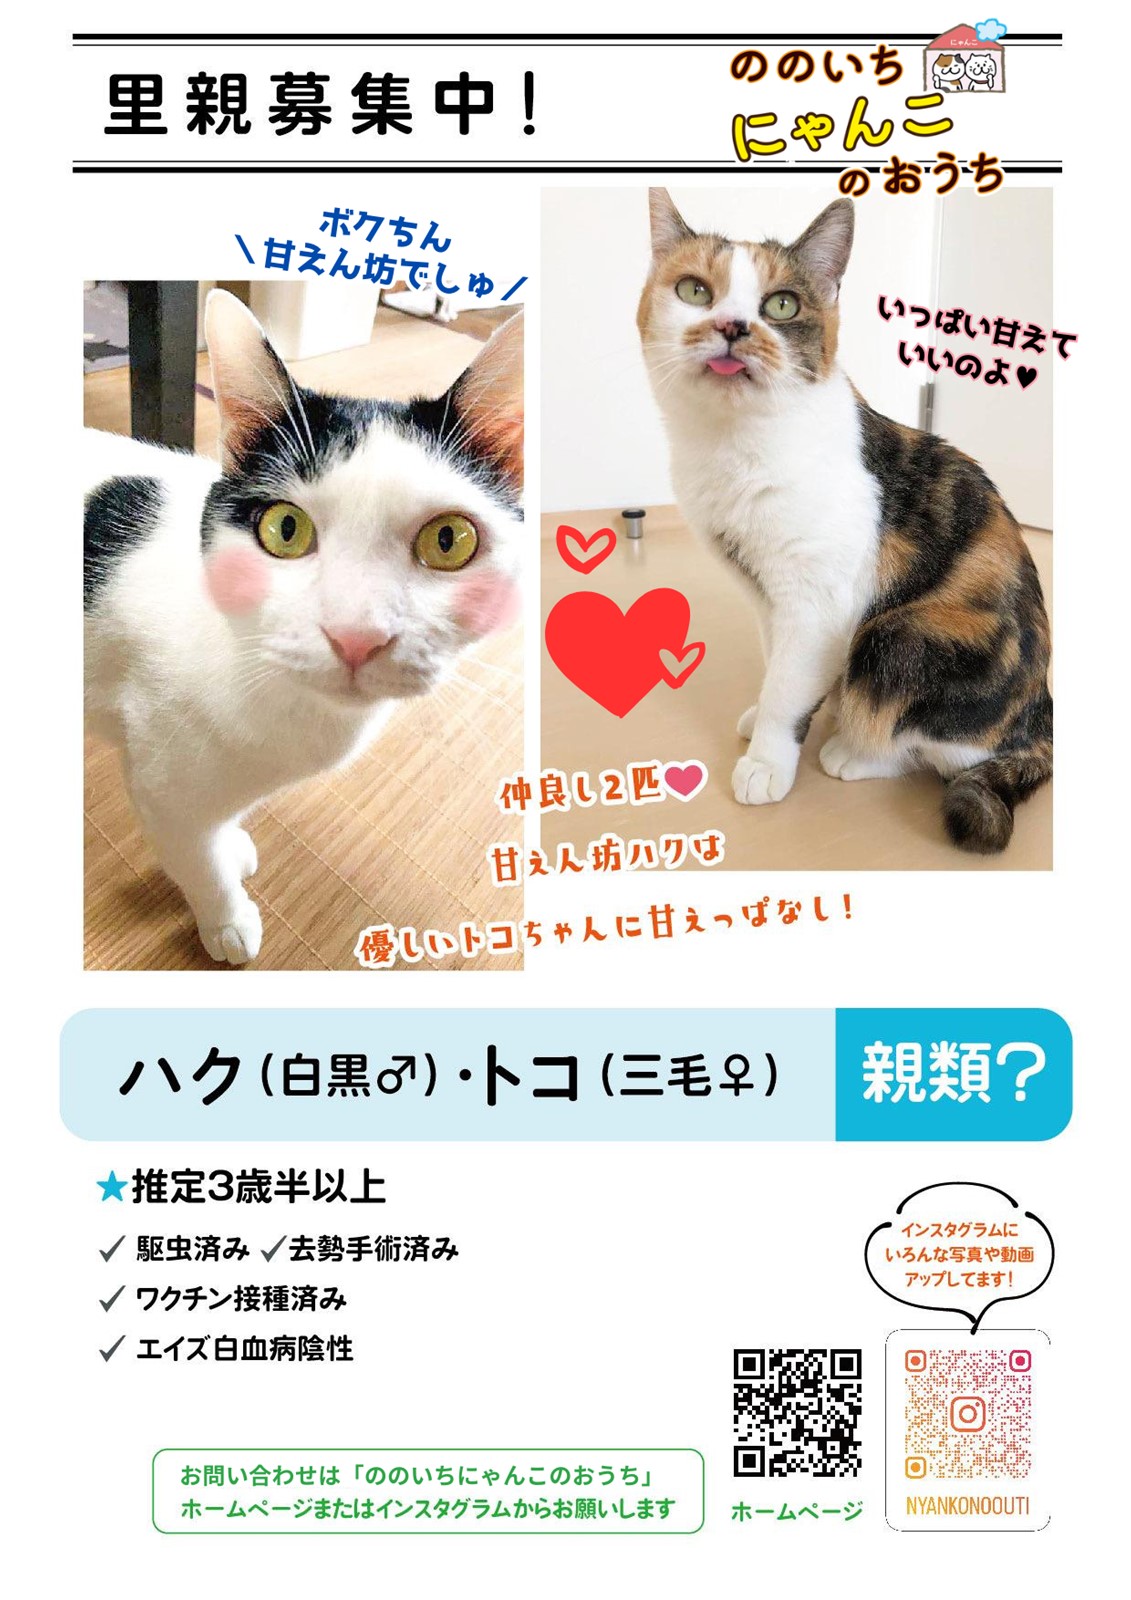 ののいちにゃんこのおうち様より　里親募集中の保護猫「ハクくん」「トコちゃん」のご紹介　石川県野々市市